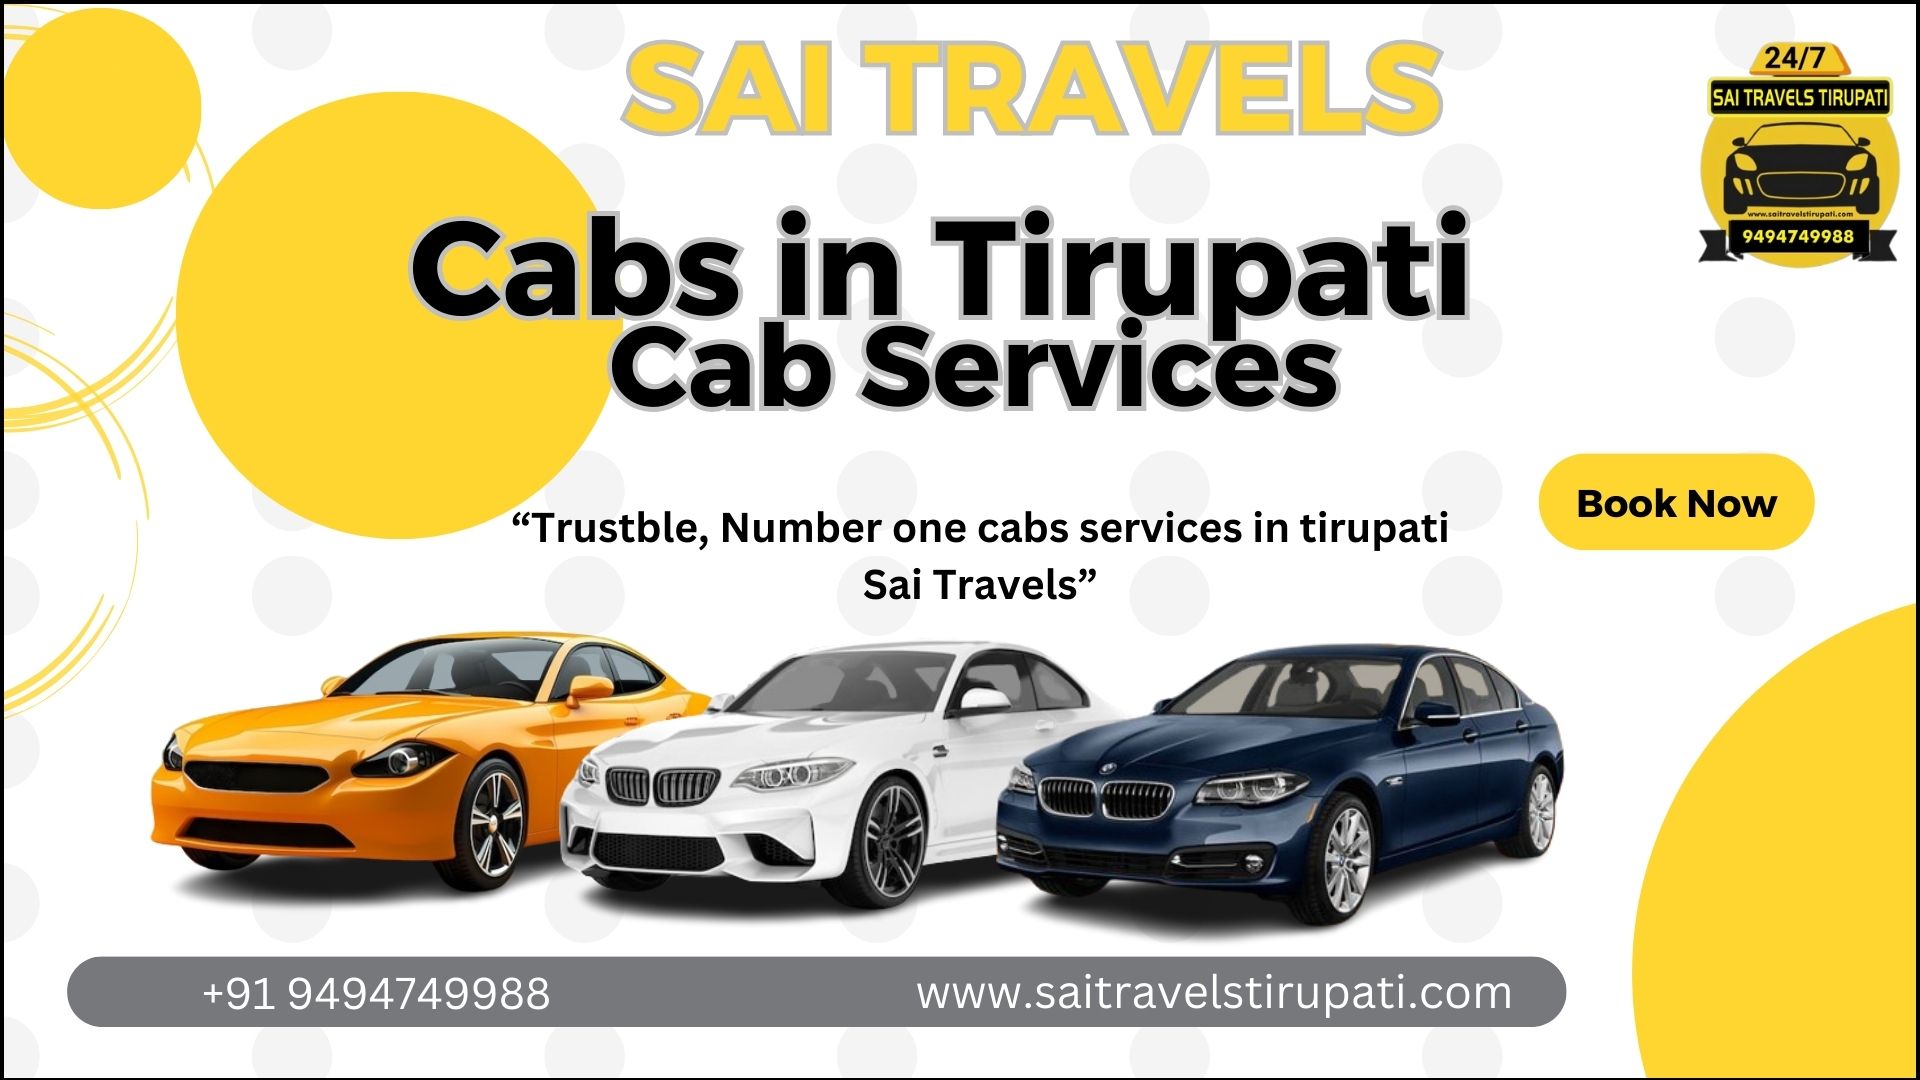 Cabs in Tirupati – Cab services – Cab Services